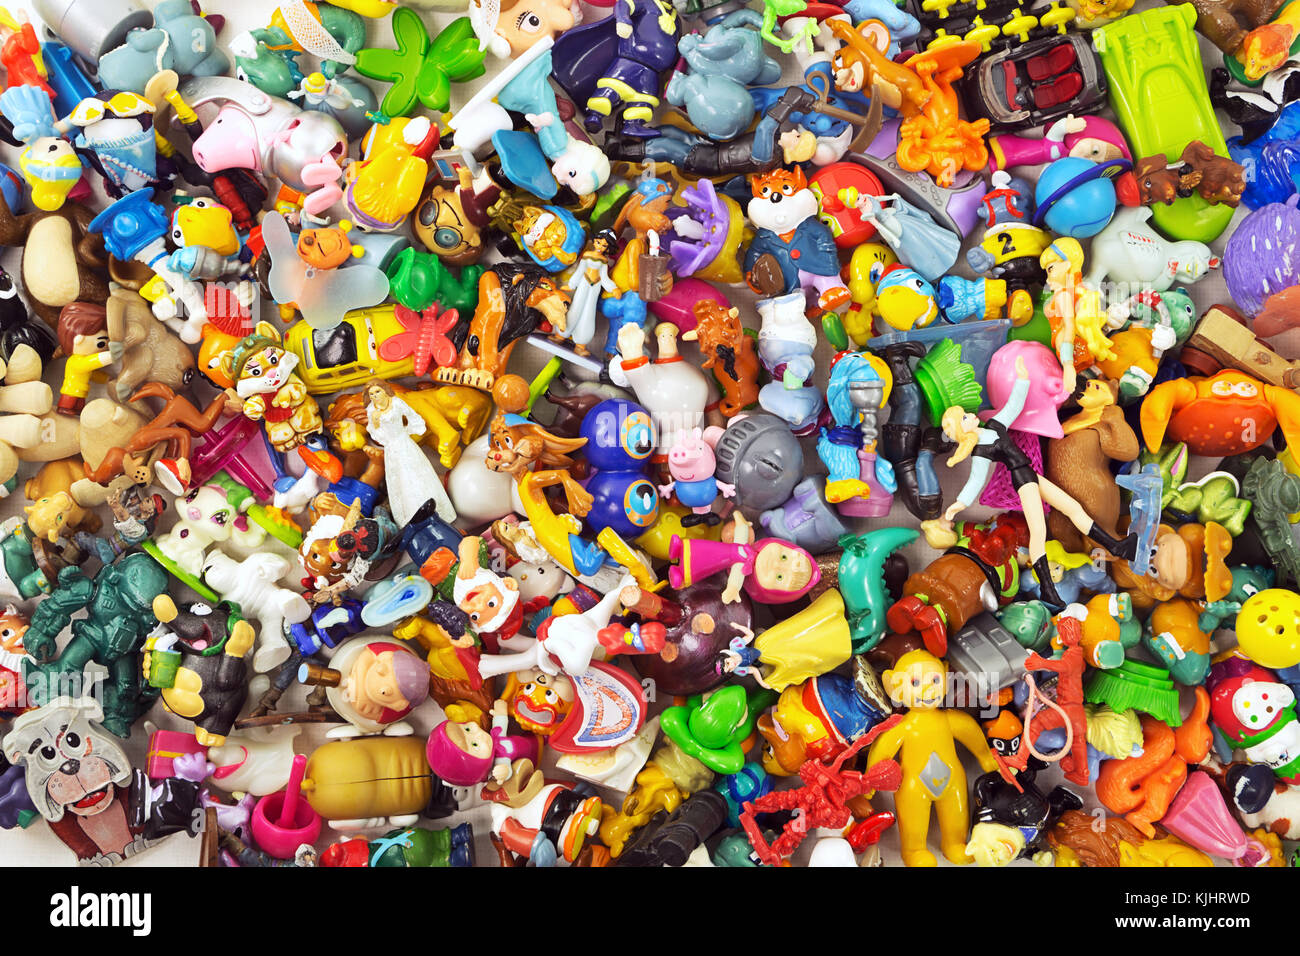 Haufen der verschiedenen kleine Spielzeuge einschließlich Kinder  Überraschung als Hintergrund Stockfotografie - Alamy